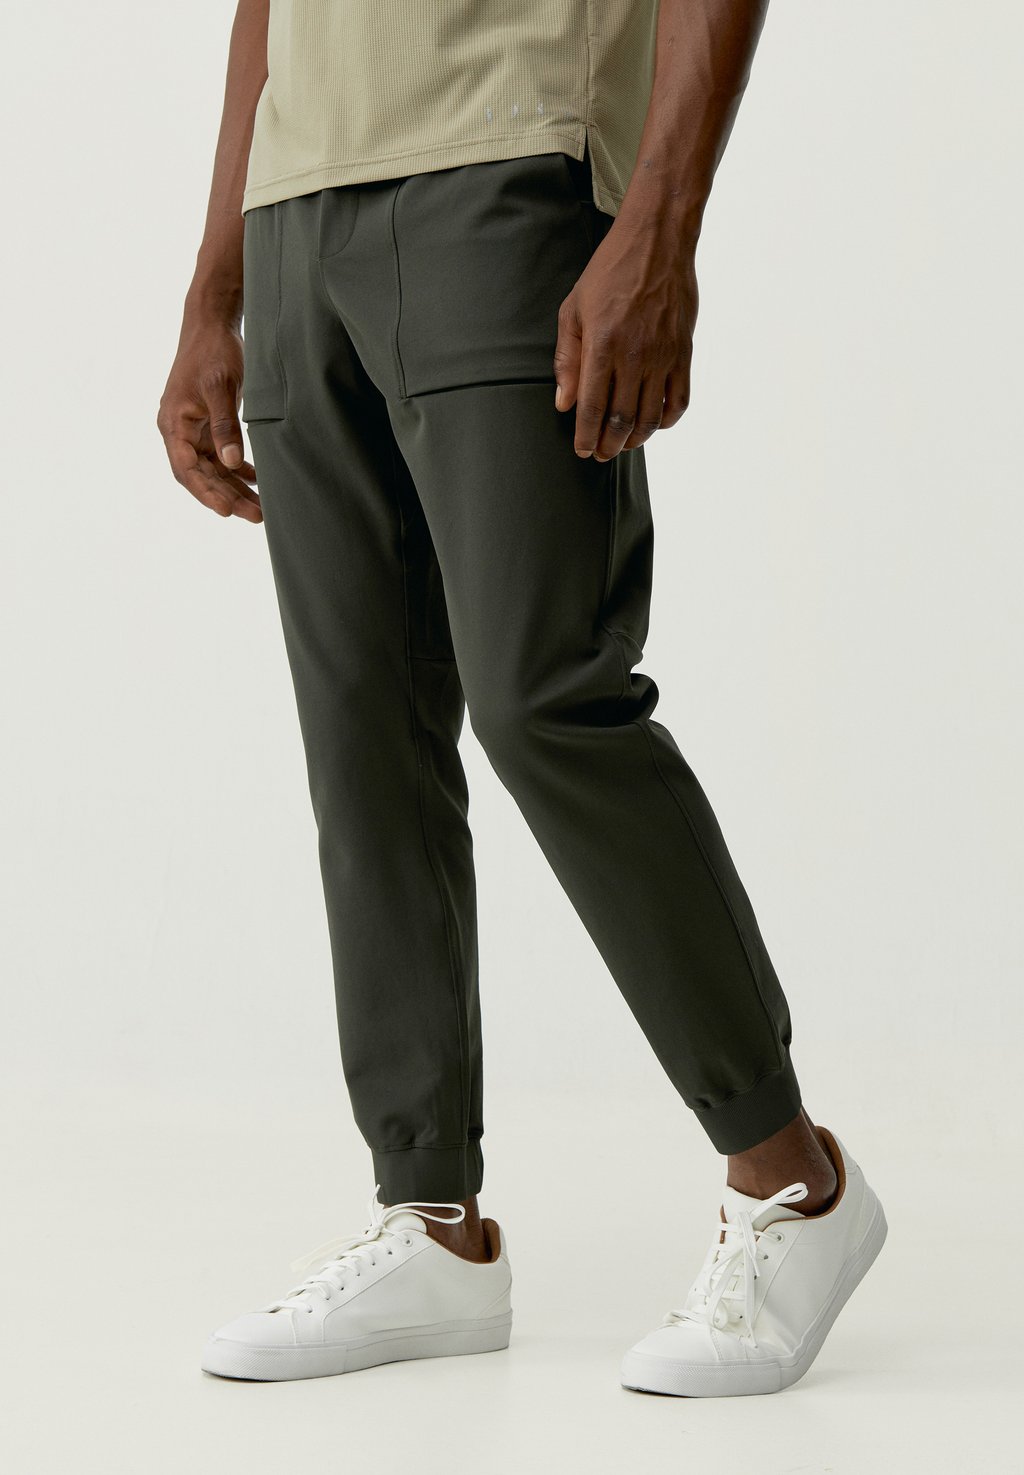 Спортивные брюки Tiber Born Living Yoga, цвет verde oscuro кроссовки ecoalf zapatillas verde oscuro